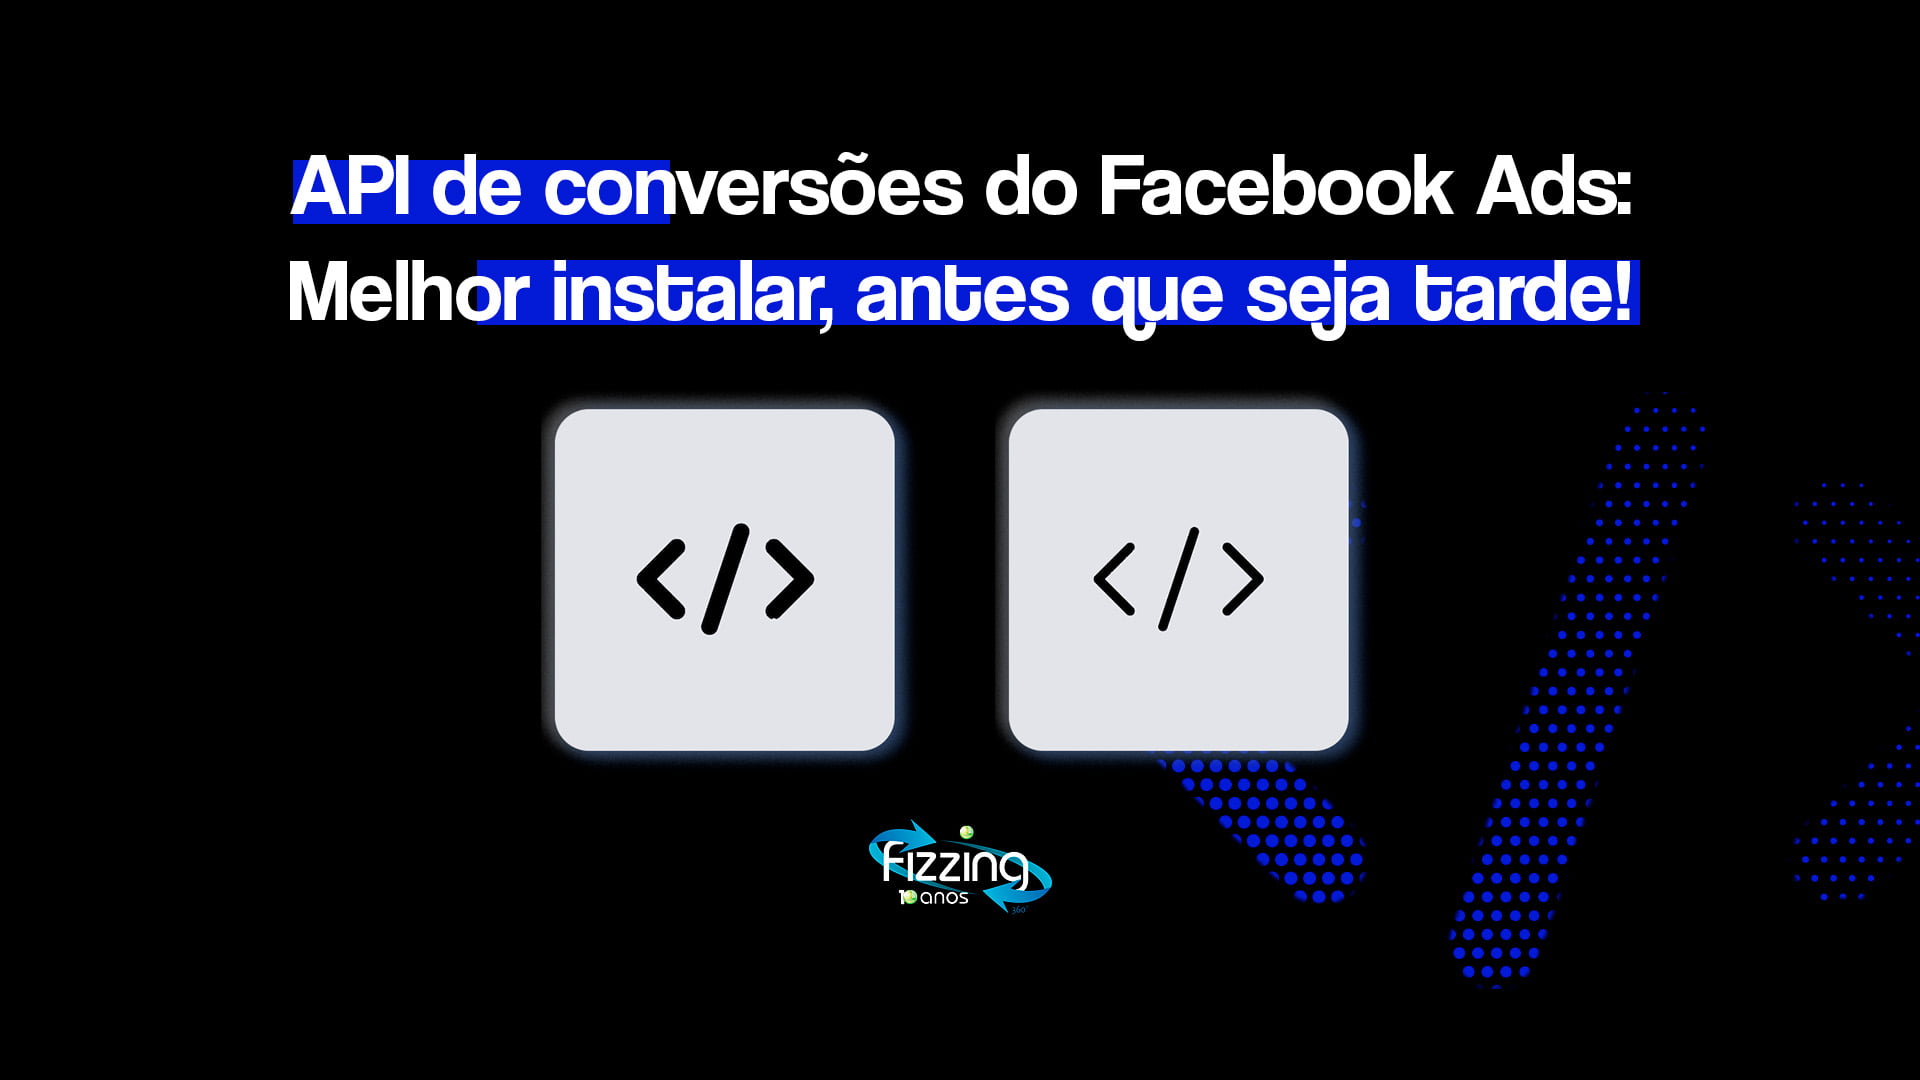 Barra entre dois chvrons, simbolizando um código, com o seguinte texto: "Api de conversões do Facebook Ads. Melhor instalar, antes que seja tarde!"